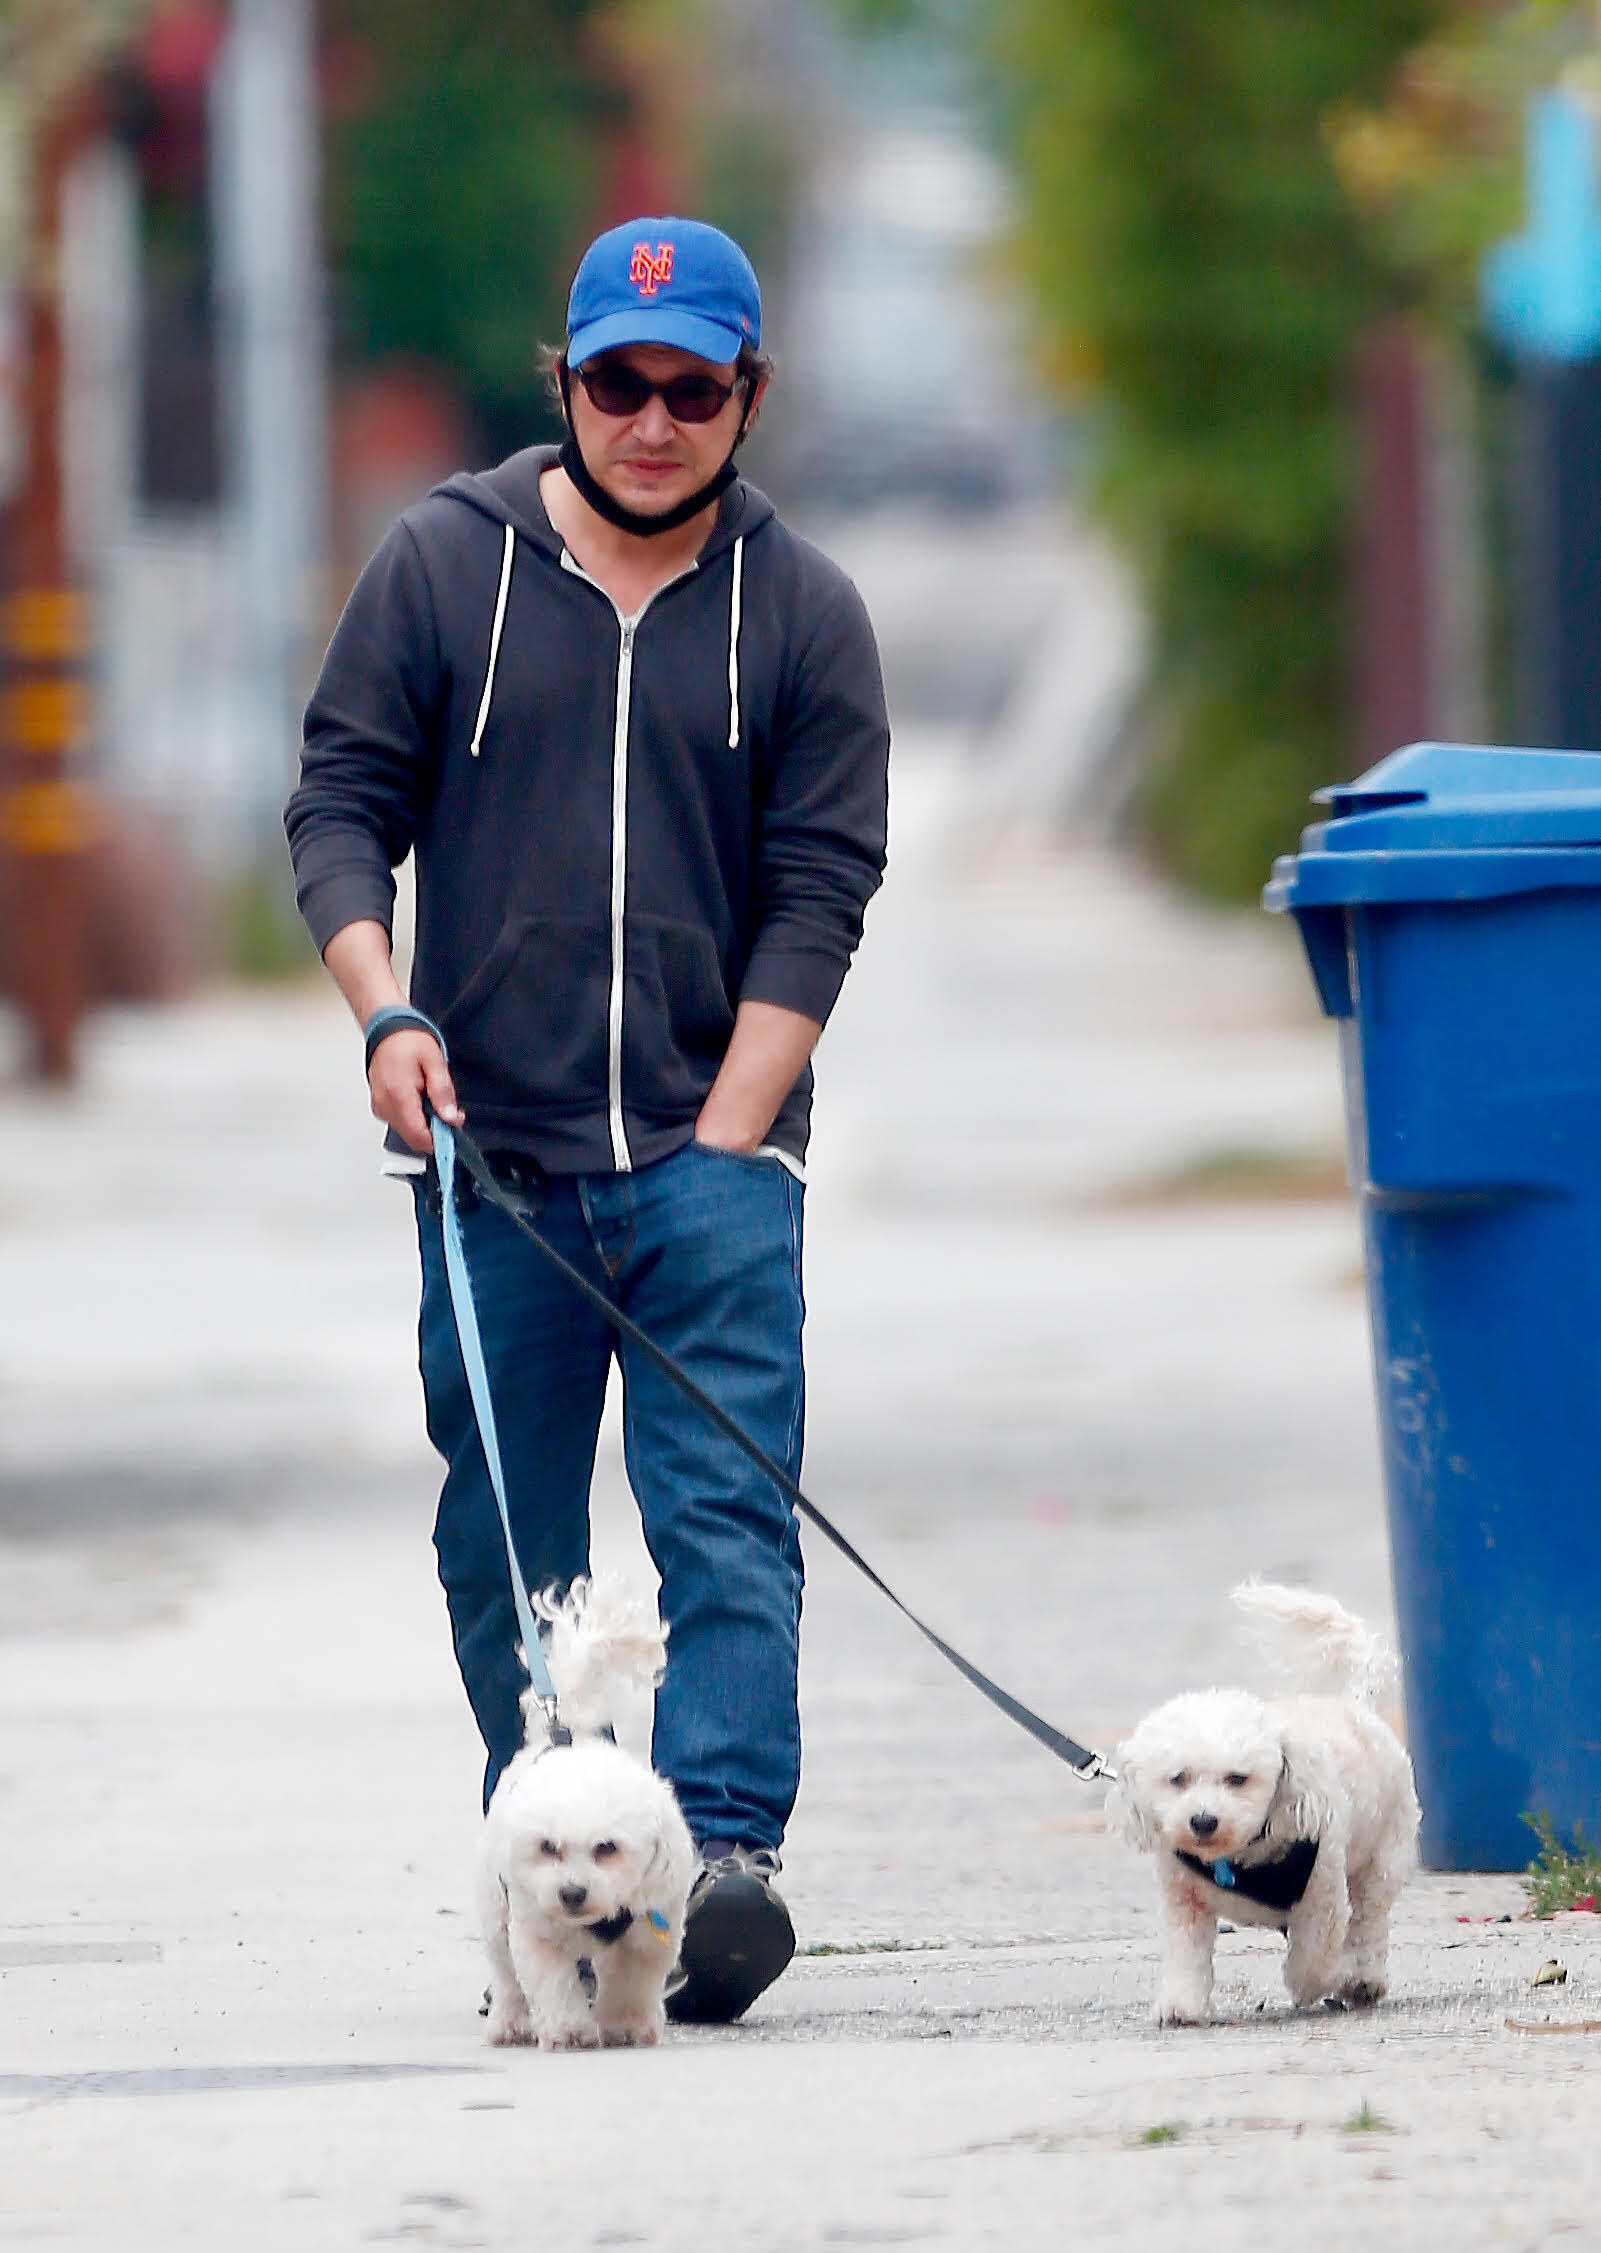 JTT is walking his dogs